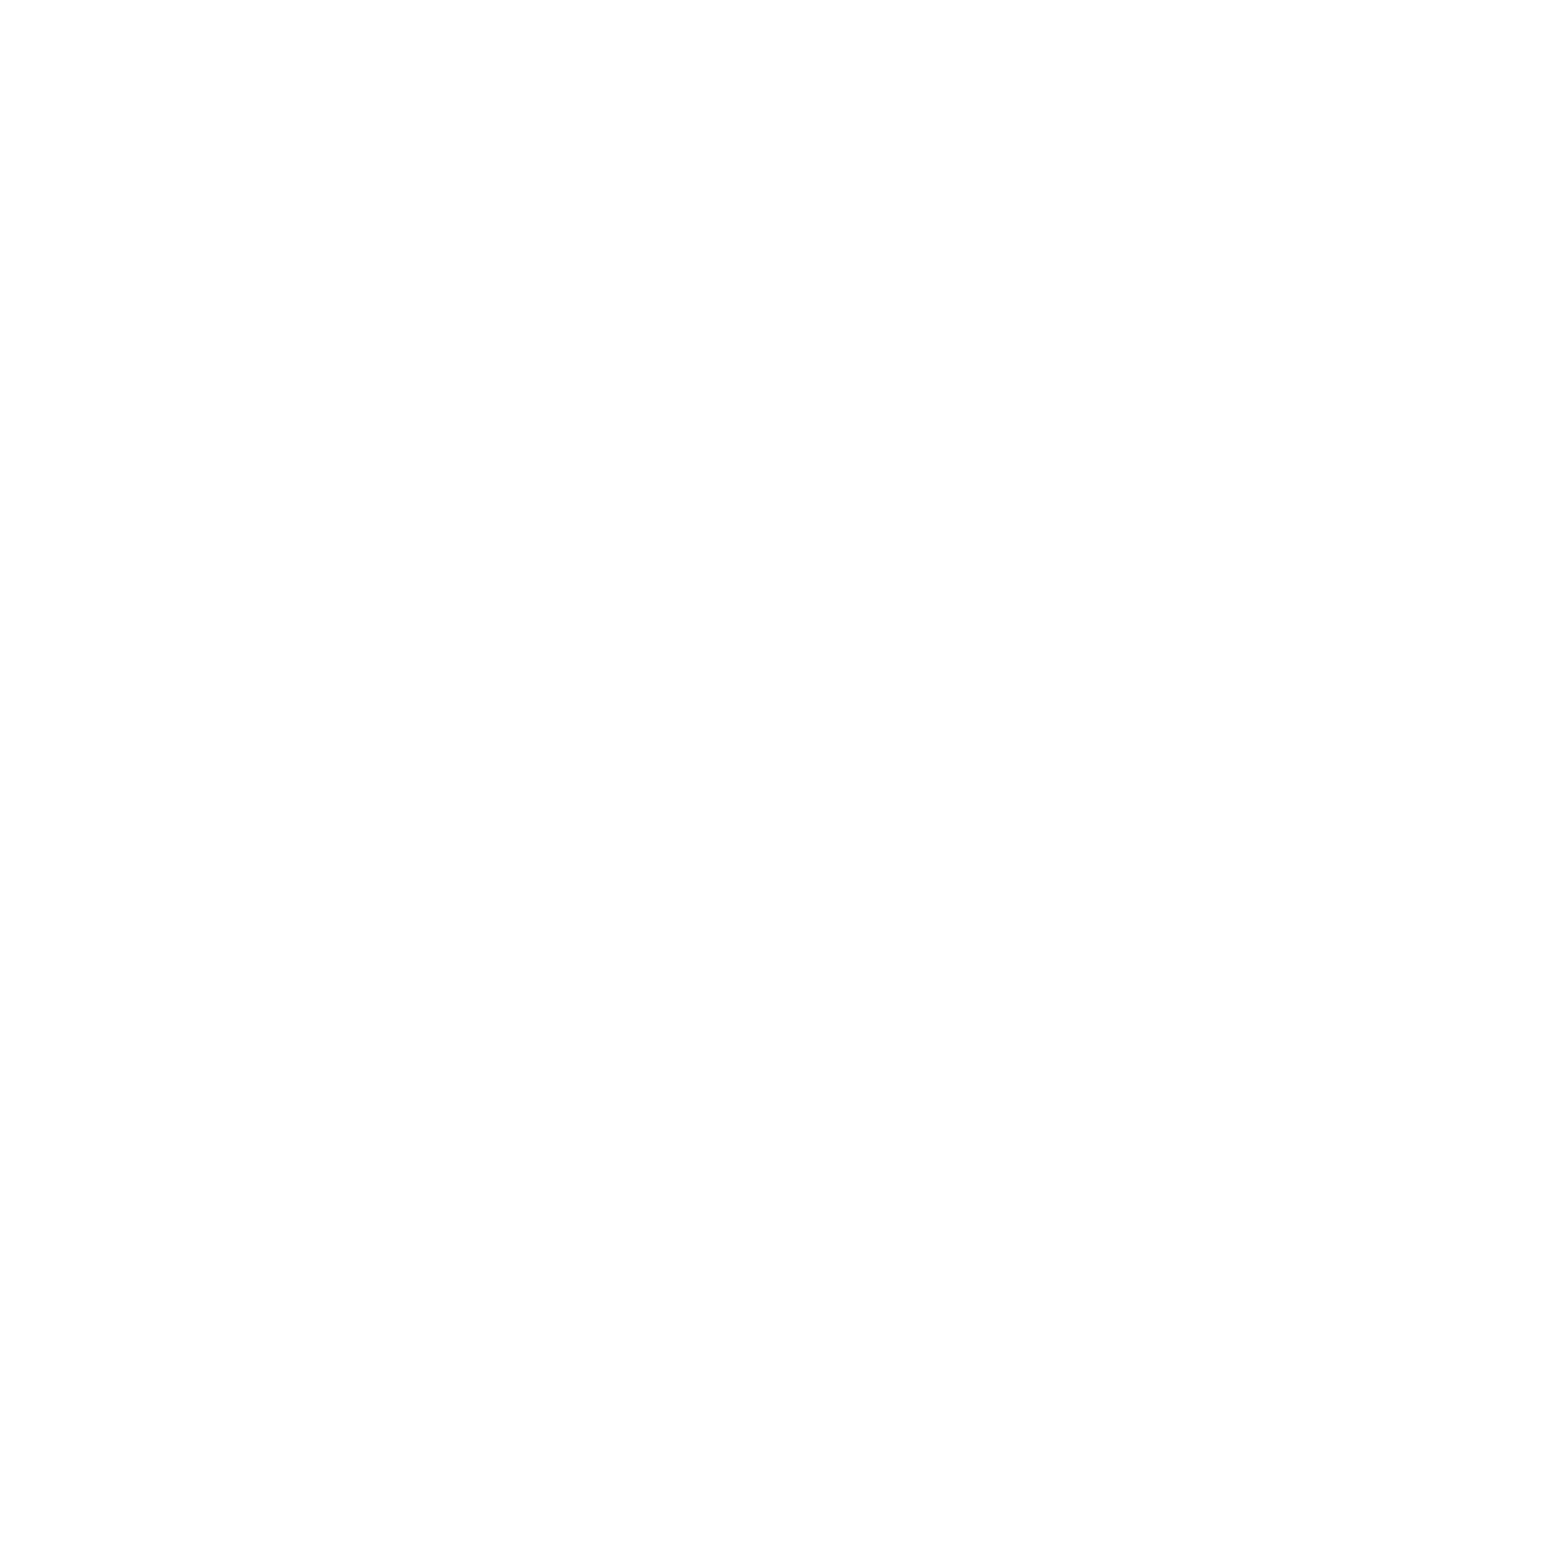 lensax-logo-central-oftalmica.png